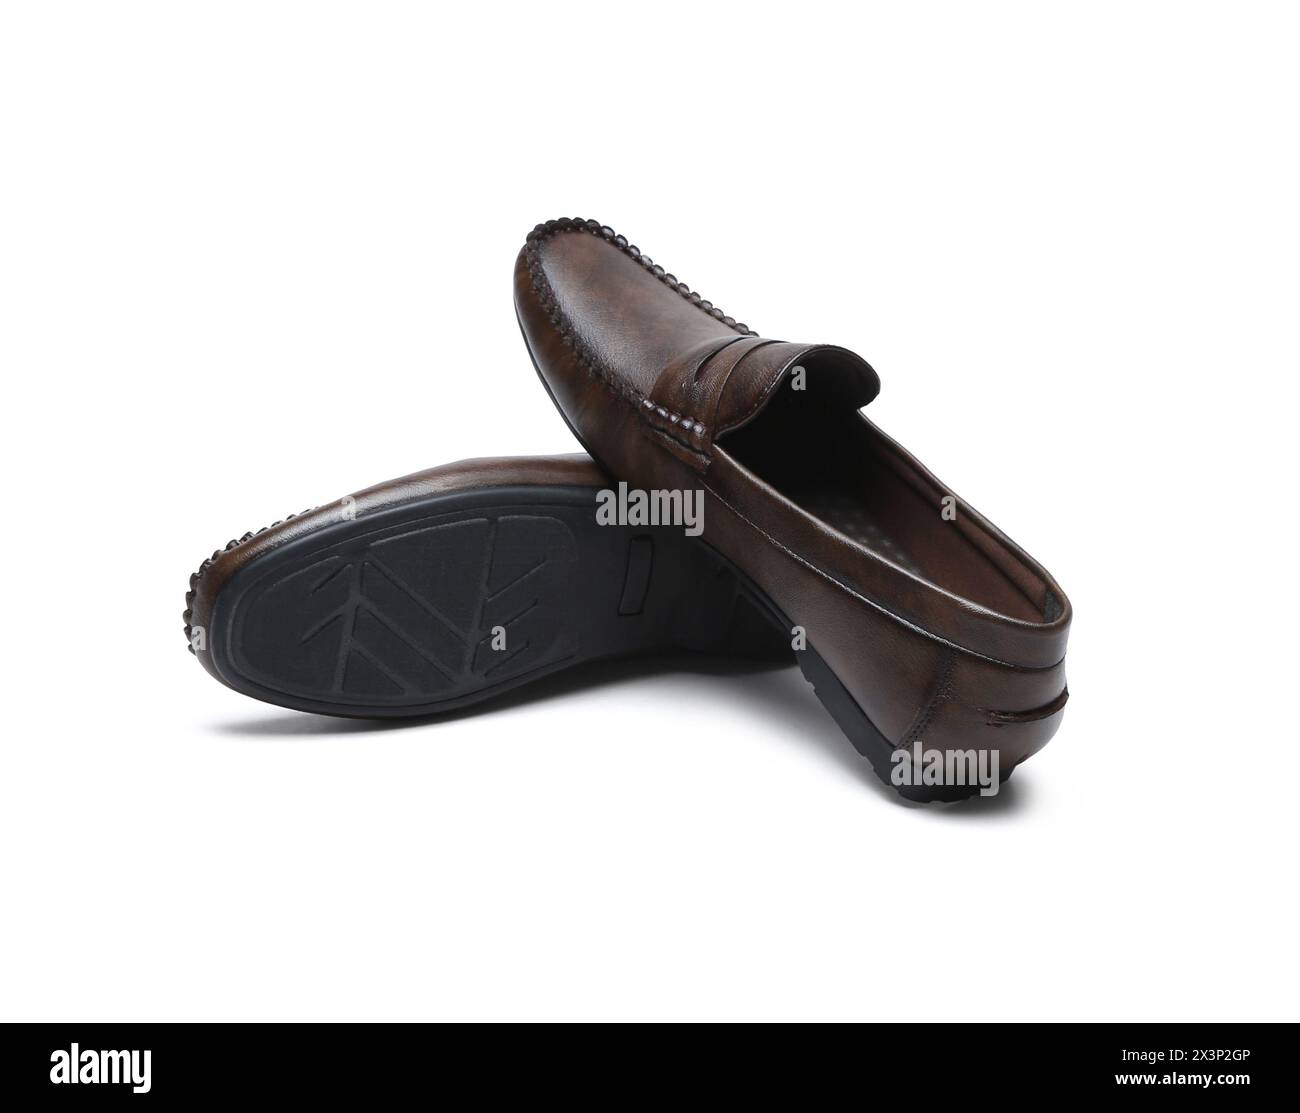 chaussures de mocassins brun foncé isolées sur fond blanc Banque D'Images